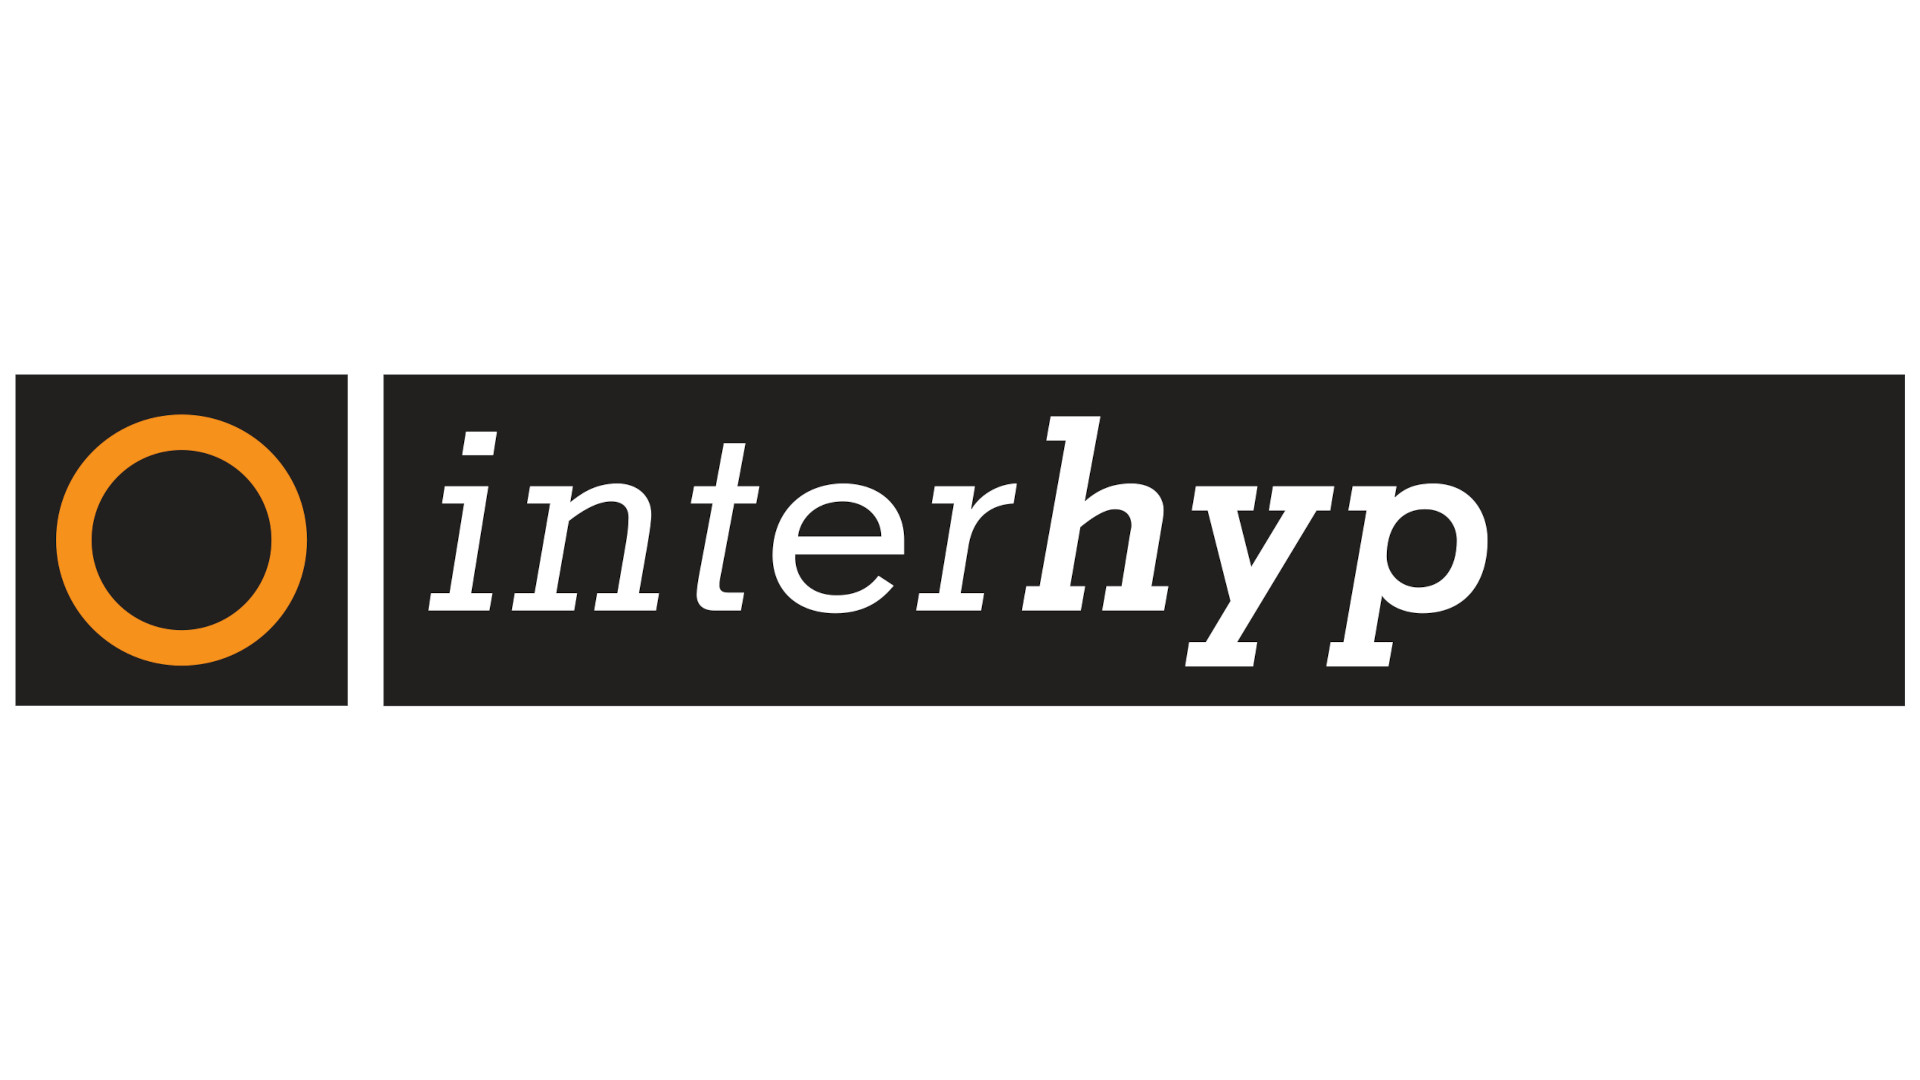 Interhyp